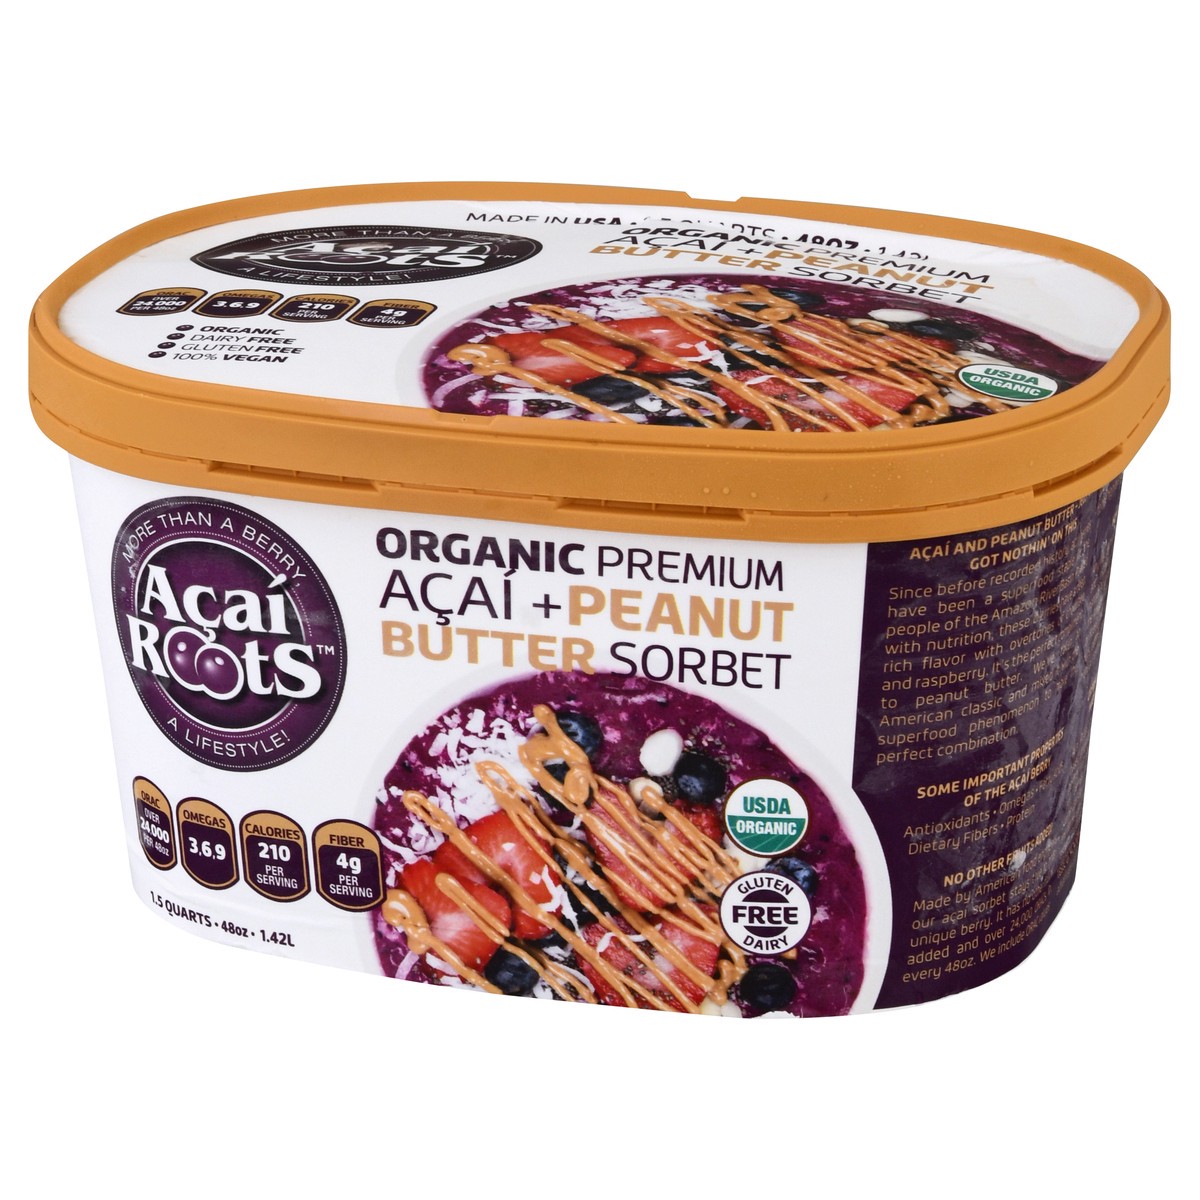 slide 11 of 13, Acai Roots Organic Premium Acai + Peanut Butter Sorbet 1.5 qt, 1.5 qt